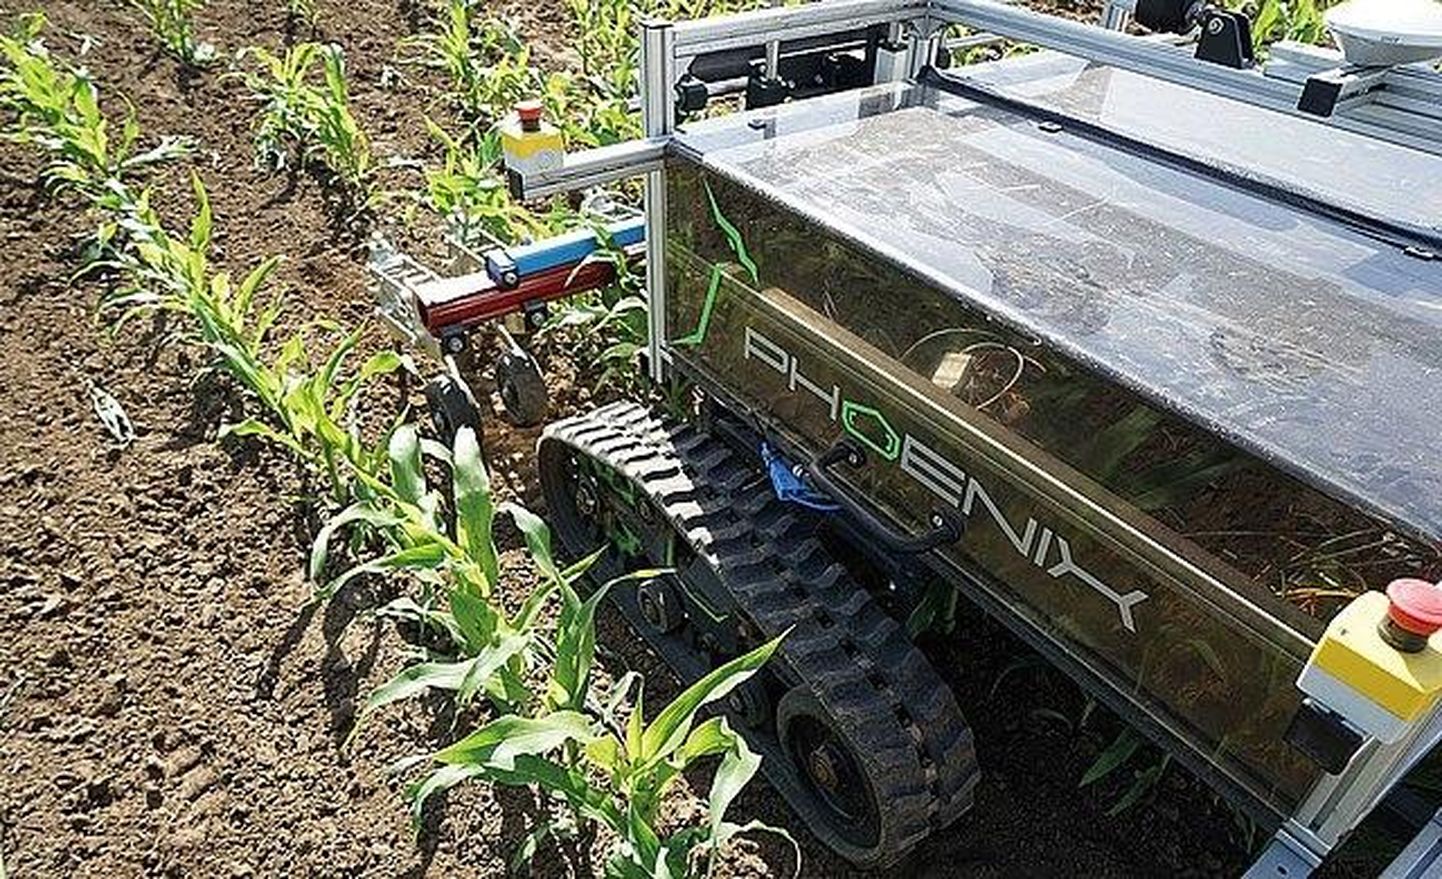 Tehnoloogiline progress põllumajanduses lubab ehitada üha nutikamaid roboteid, näiteks selliseid, mis võimaldavad asendada keemilise umbrohutõrje mehaanilisega.